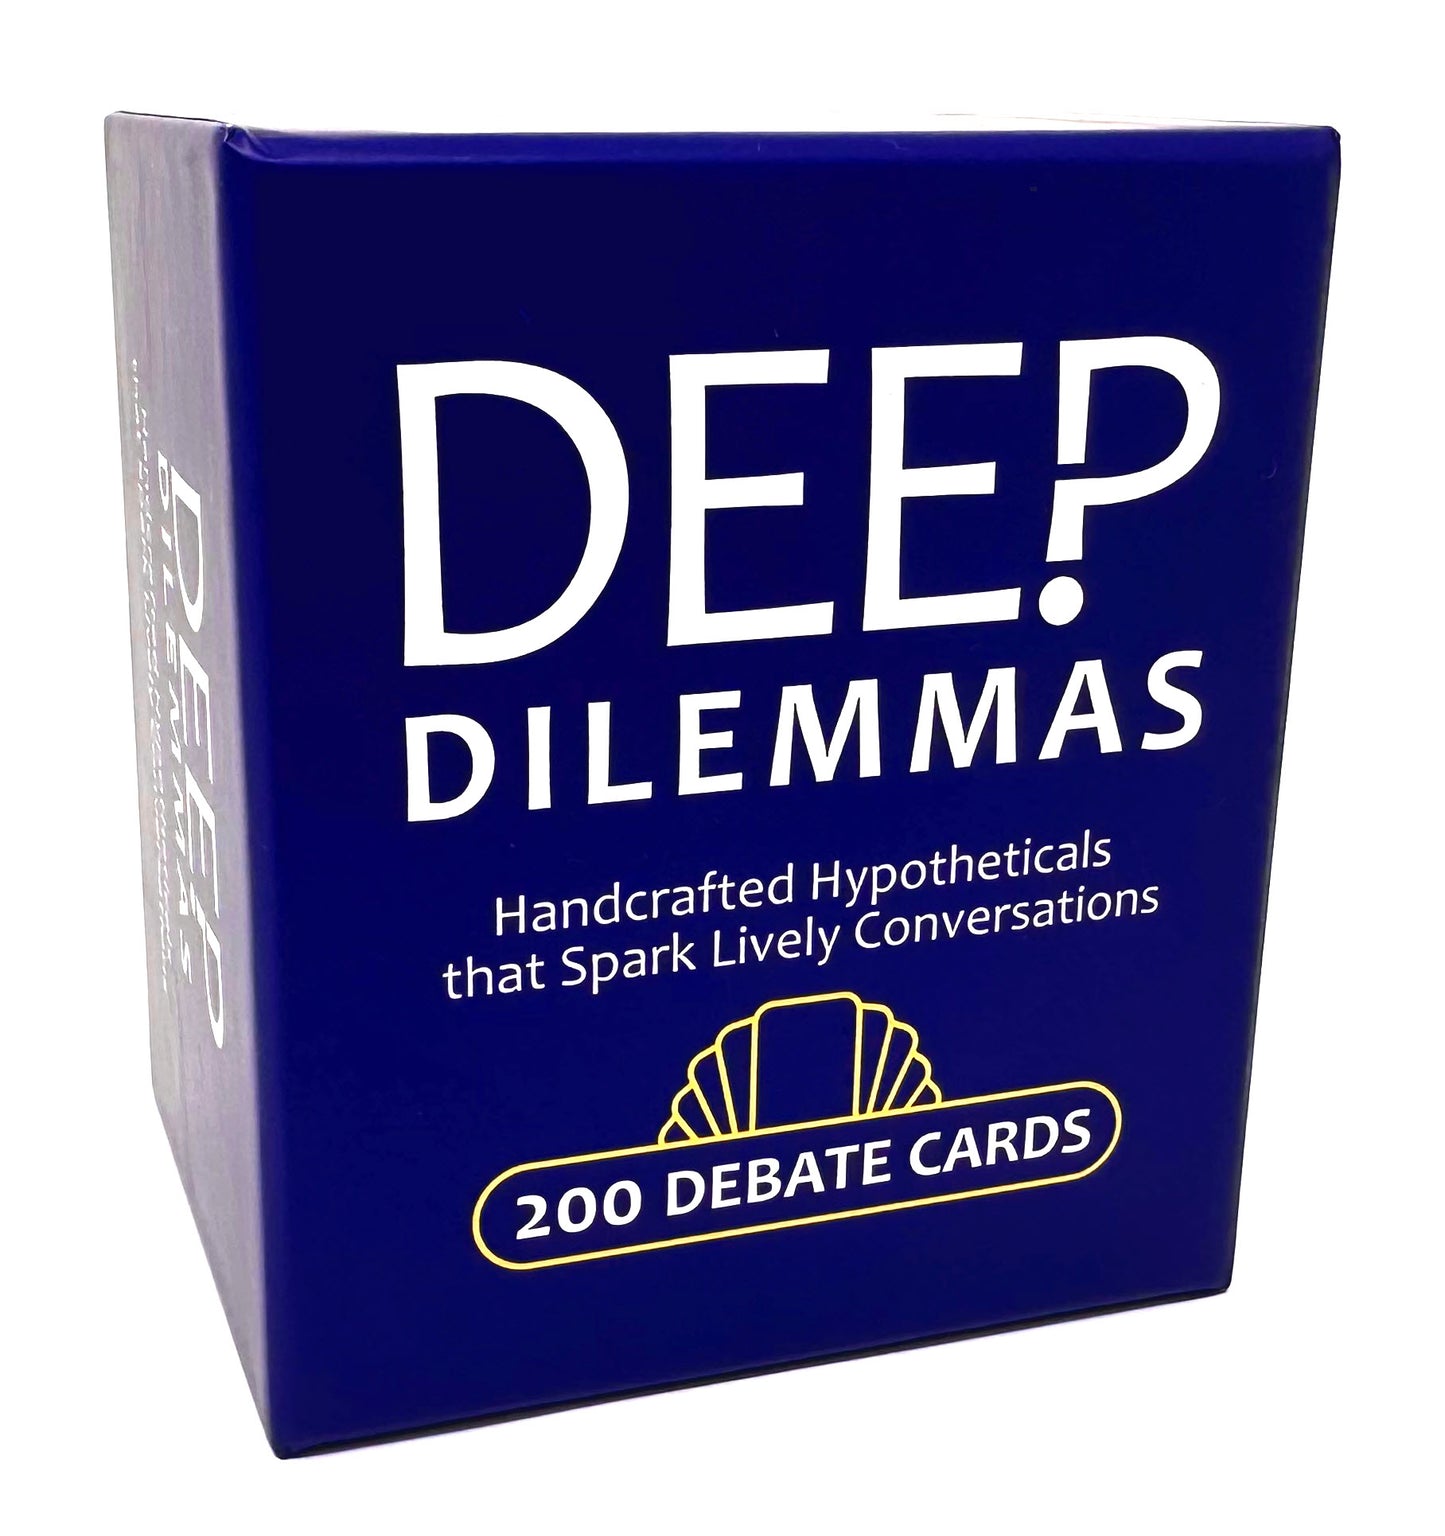 Deep Dilemmas - "Would You Rather" Conversation Cards